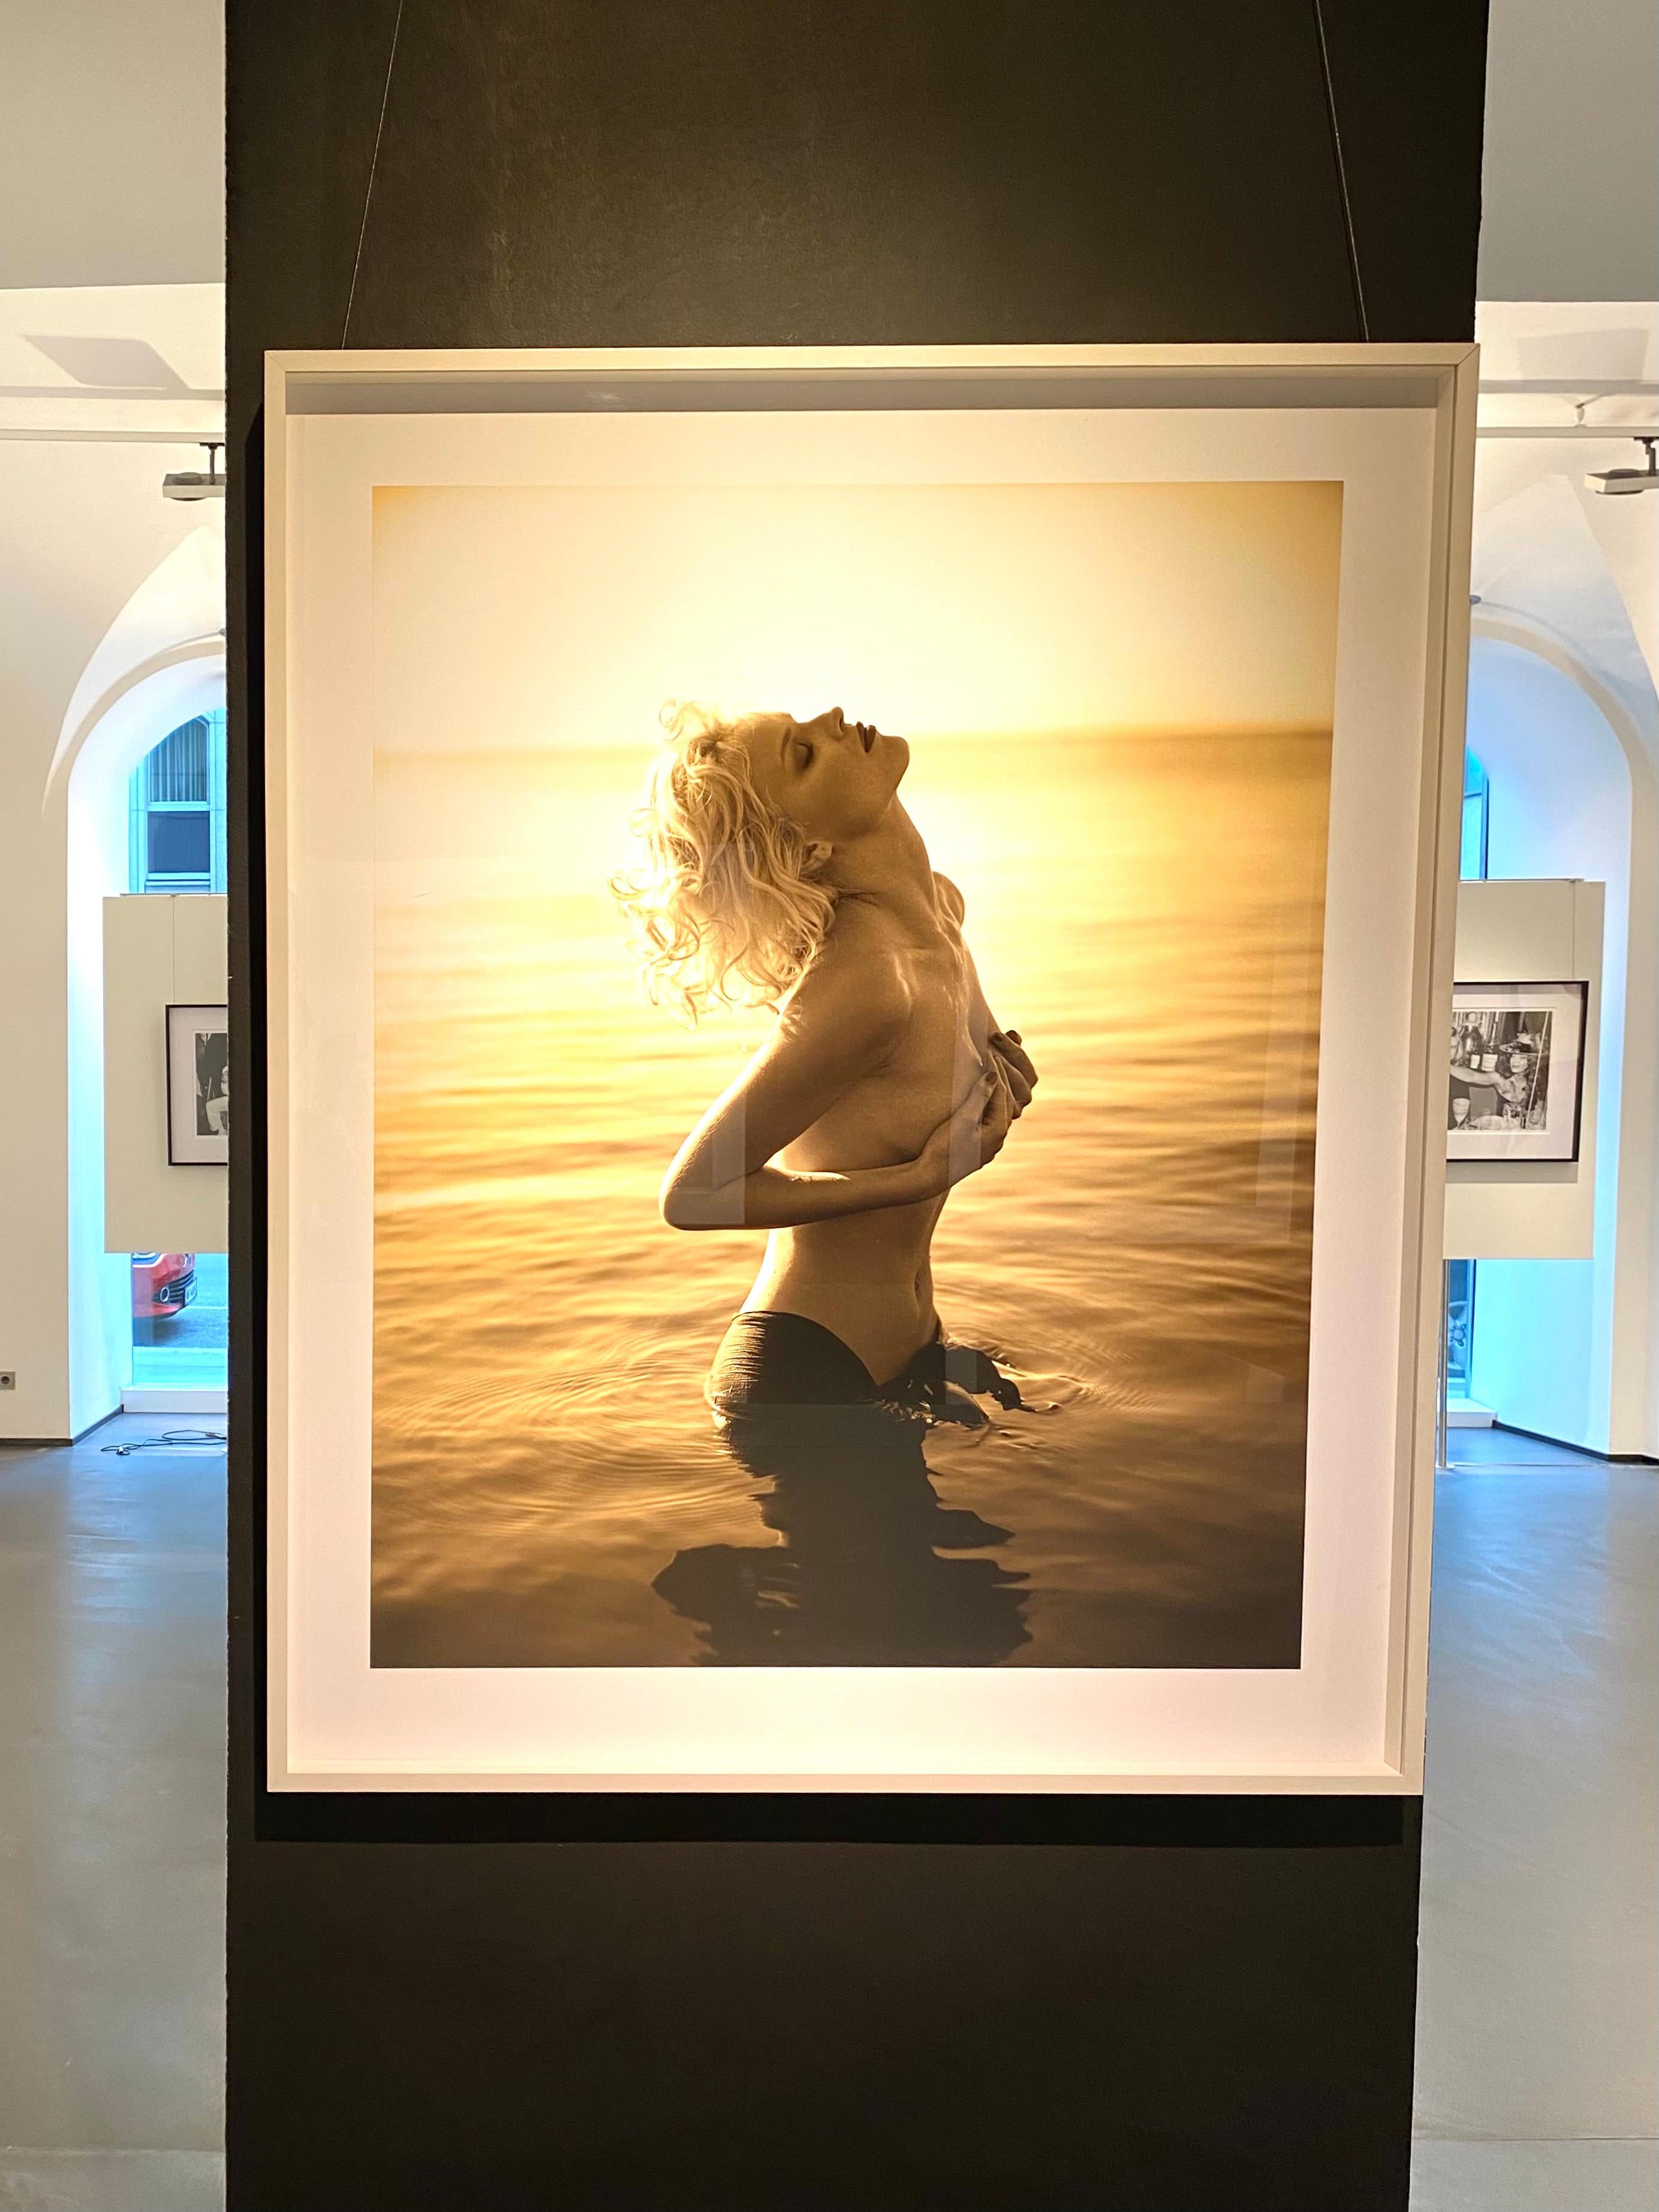 Eva Herzigova, Delano Hotel - nude model in water, fine art photography, 1996 - Photograph by Sante D´ Orazio